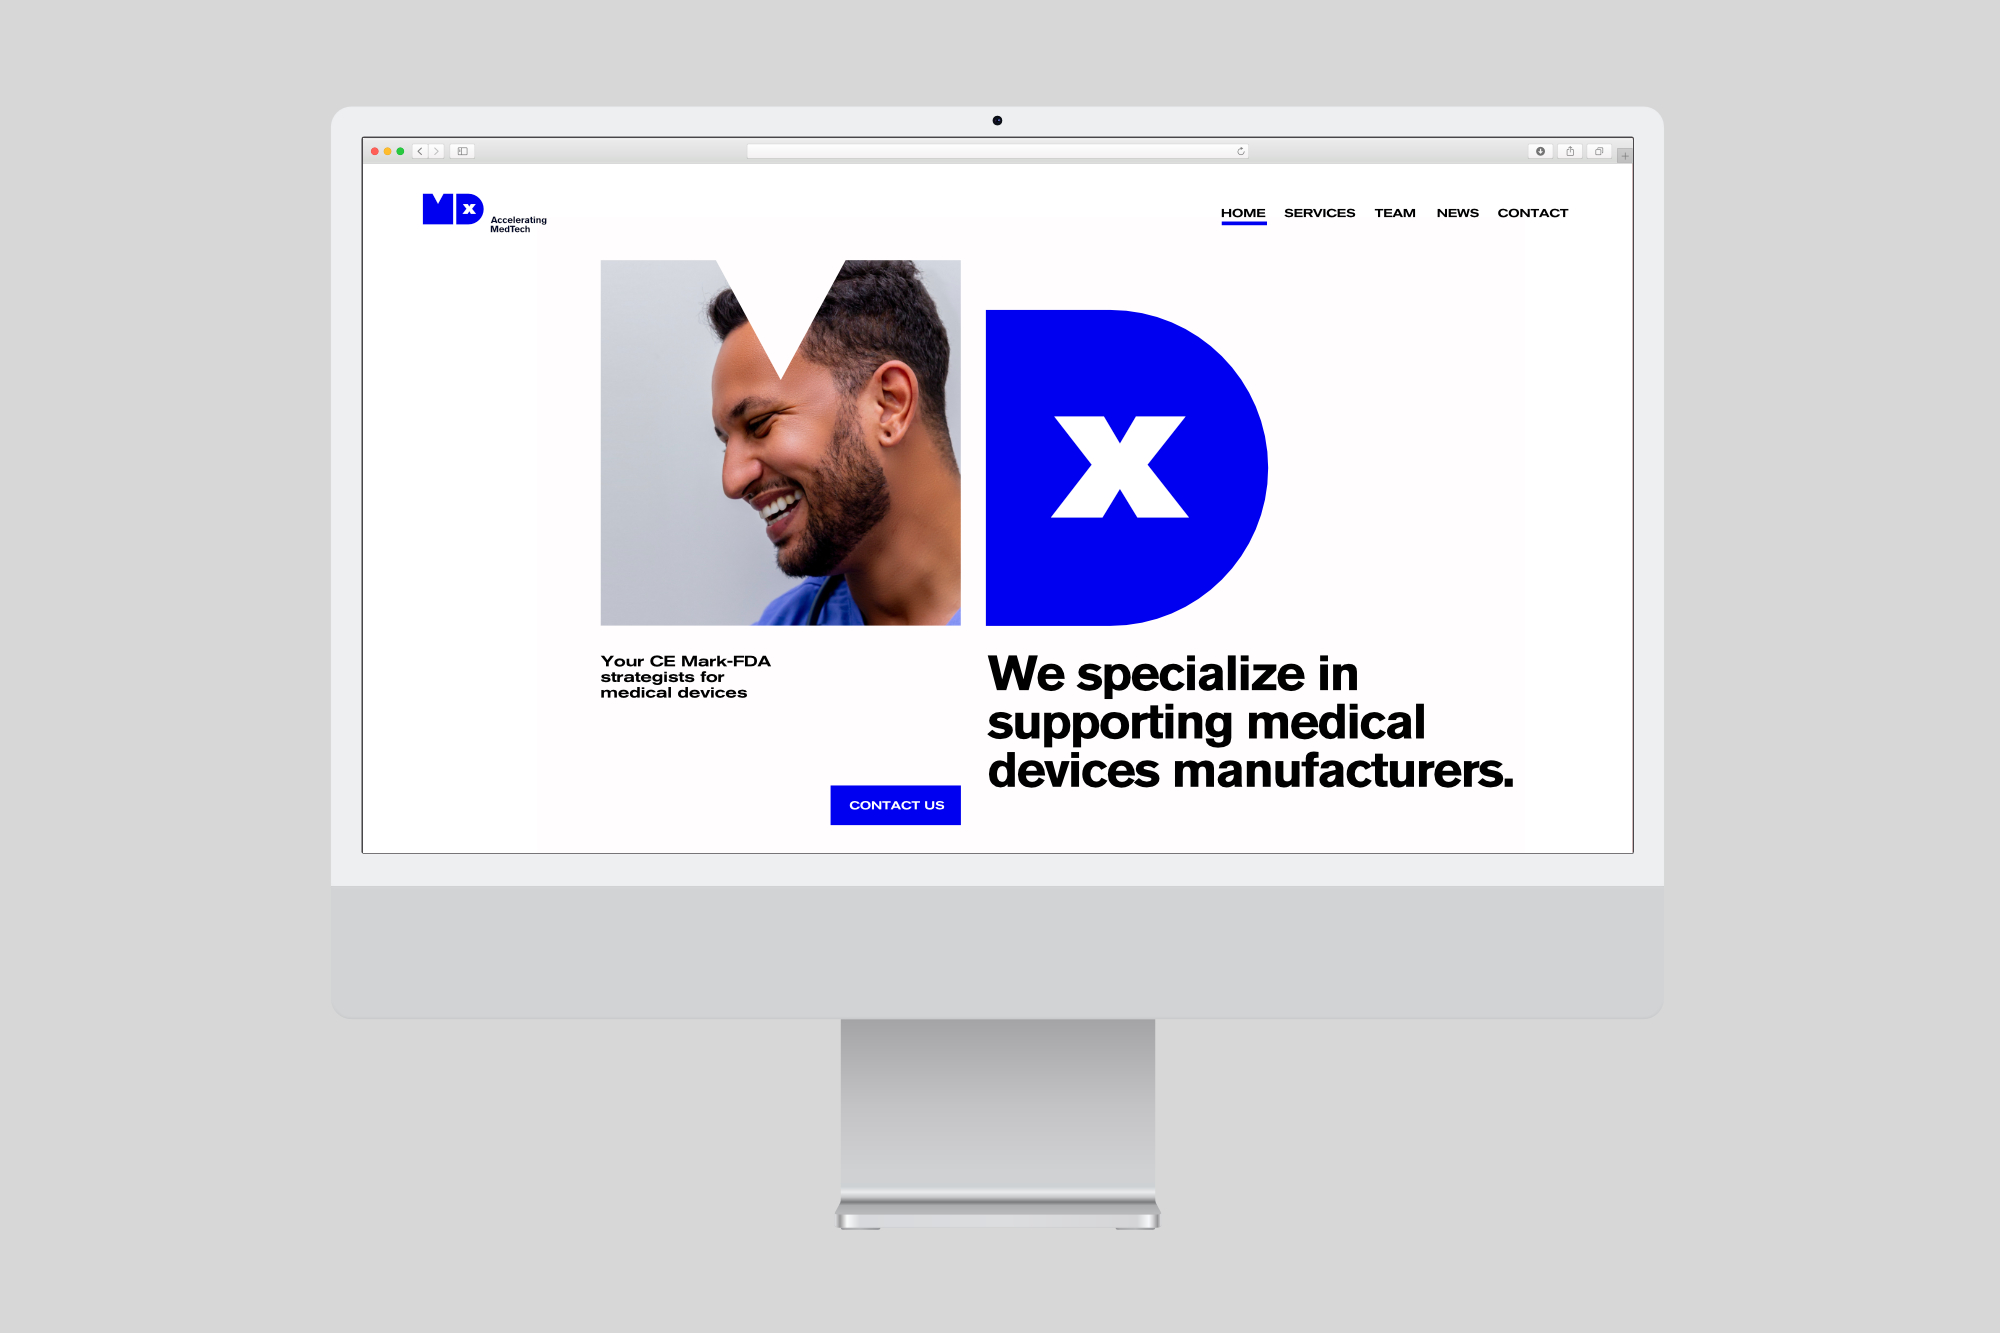 Diseño y desarrollo de identidad visual corporativa para MDx. Vista ejemplo web.